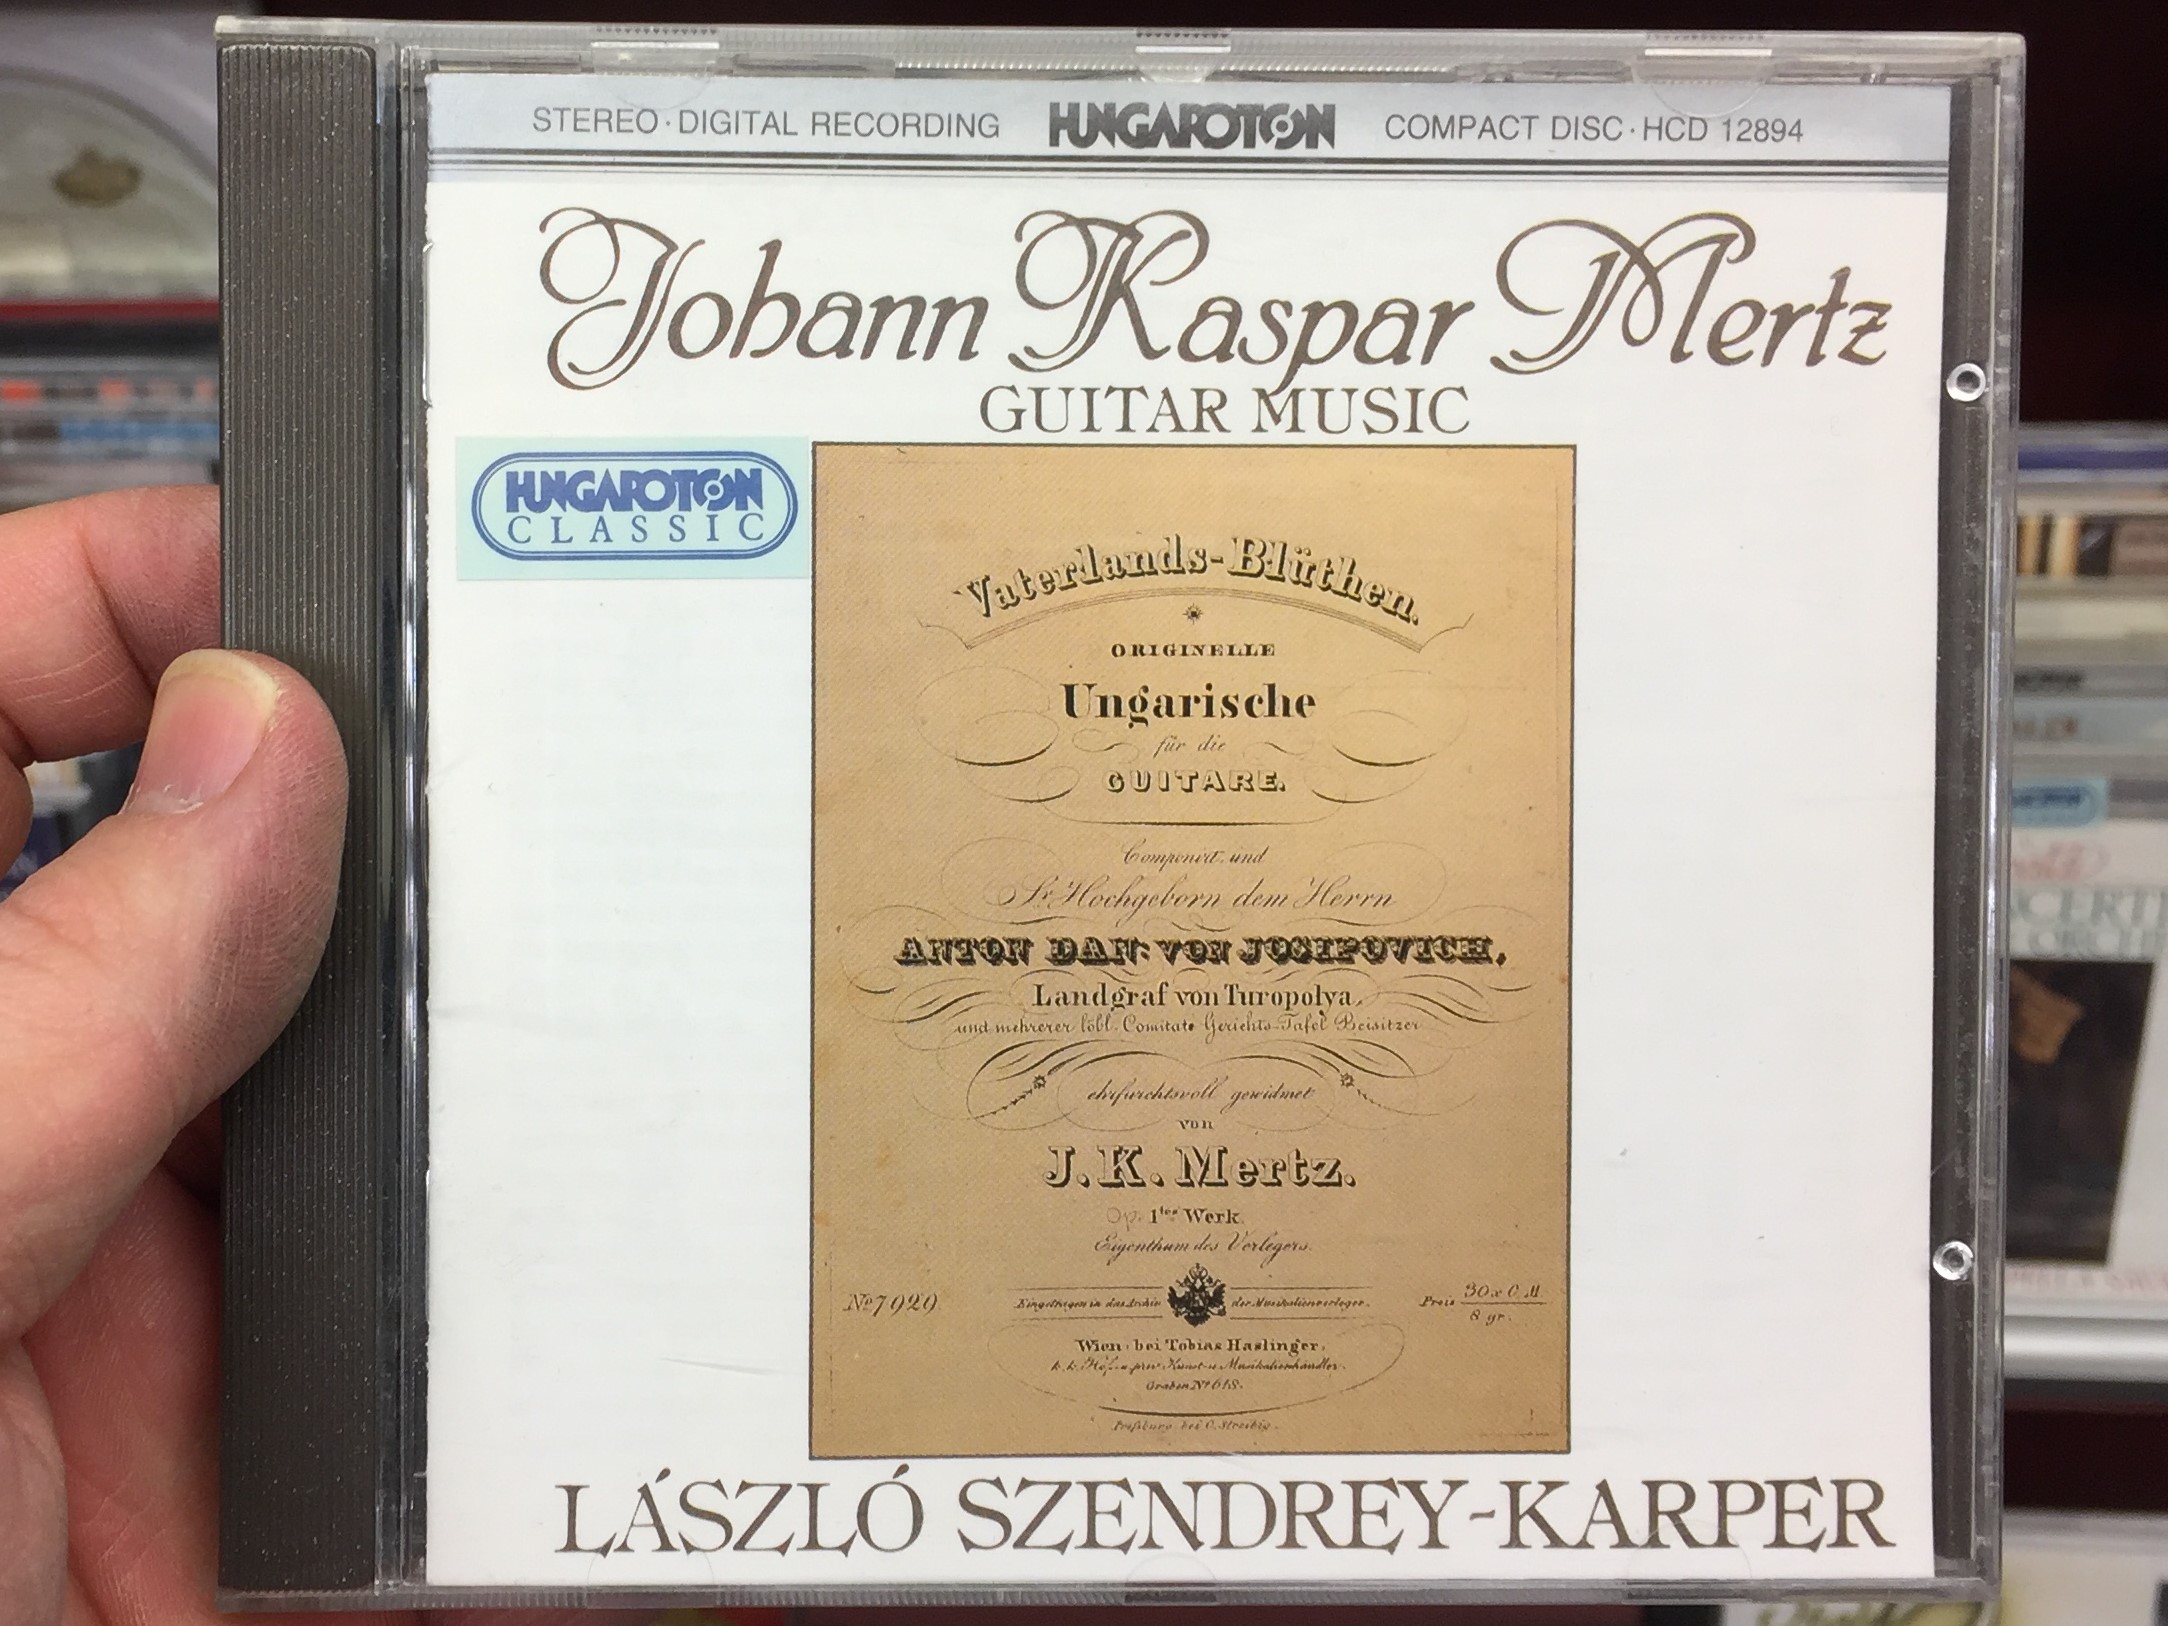 johann-kaspar-mertz-guitar-music-l-szl-szendrey-karper-hungaroton-classic-audio-cd-1988-stereo-hcd-12894-1-.jpg